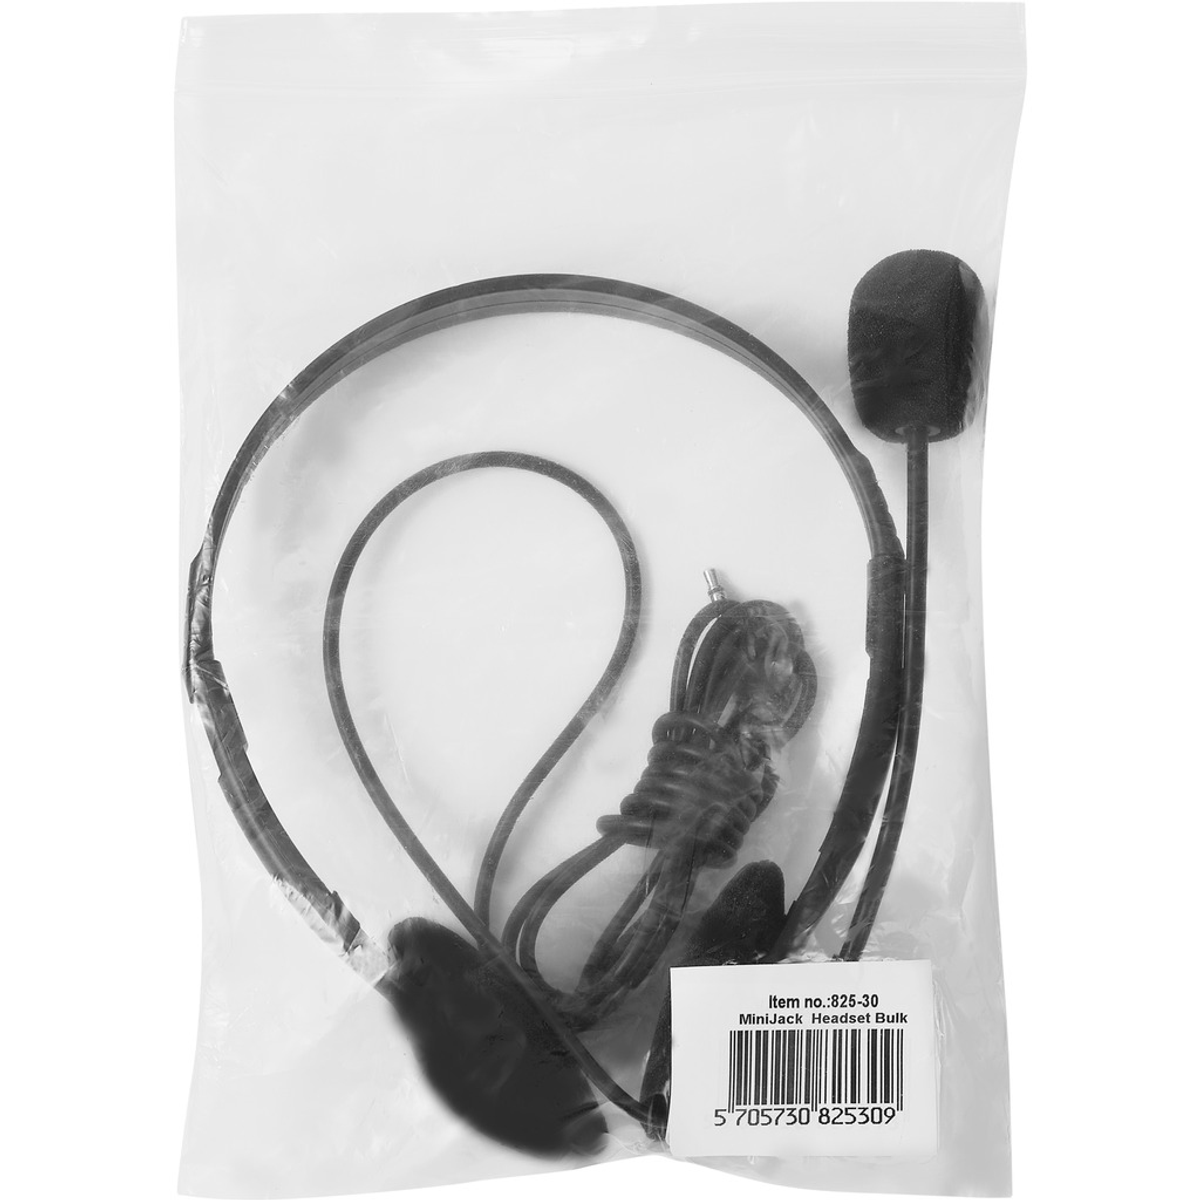 Schwarz Headset MiniJack PC Bulk, Kopfhörer On-ear SANDBERG